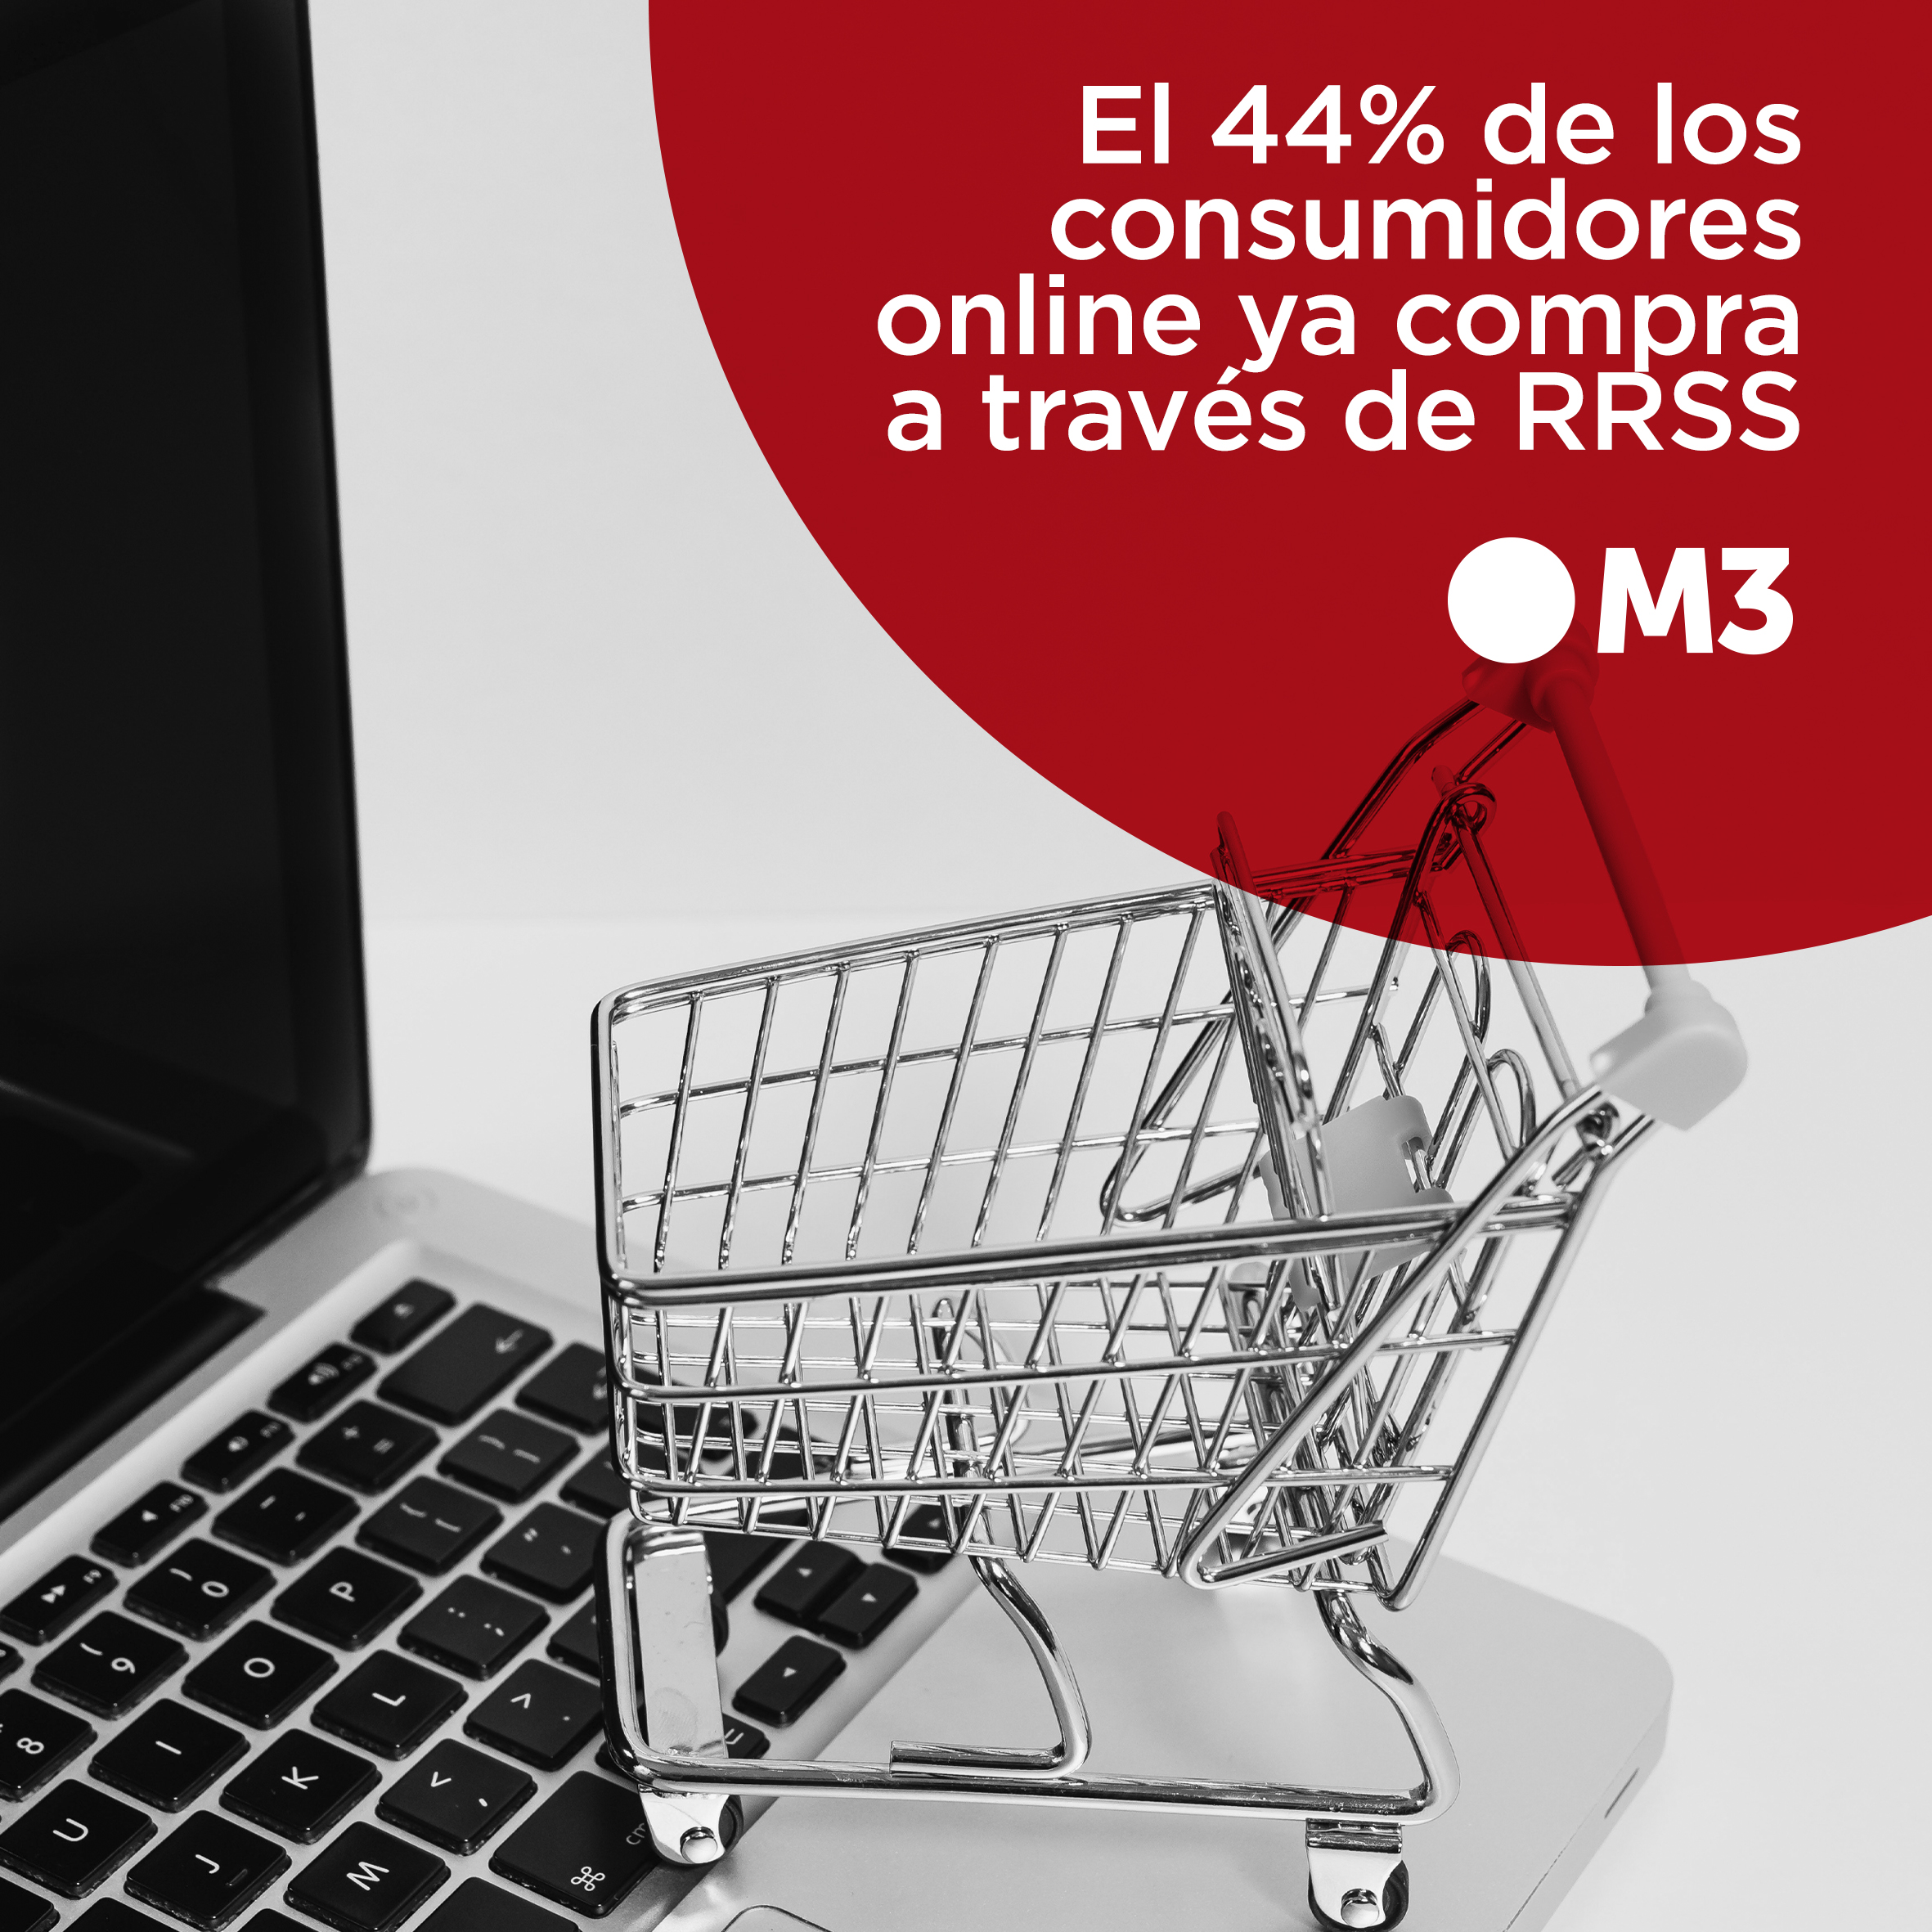 El 44% de los consumidores online ya compra a través de RRSS